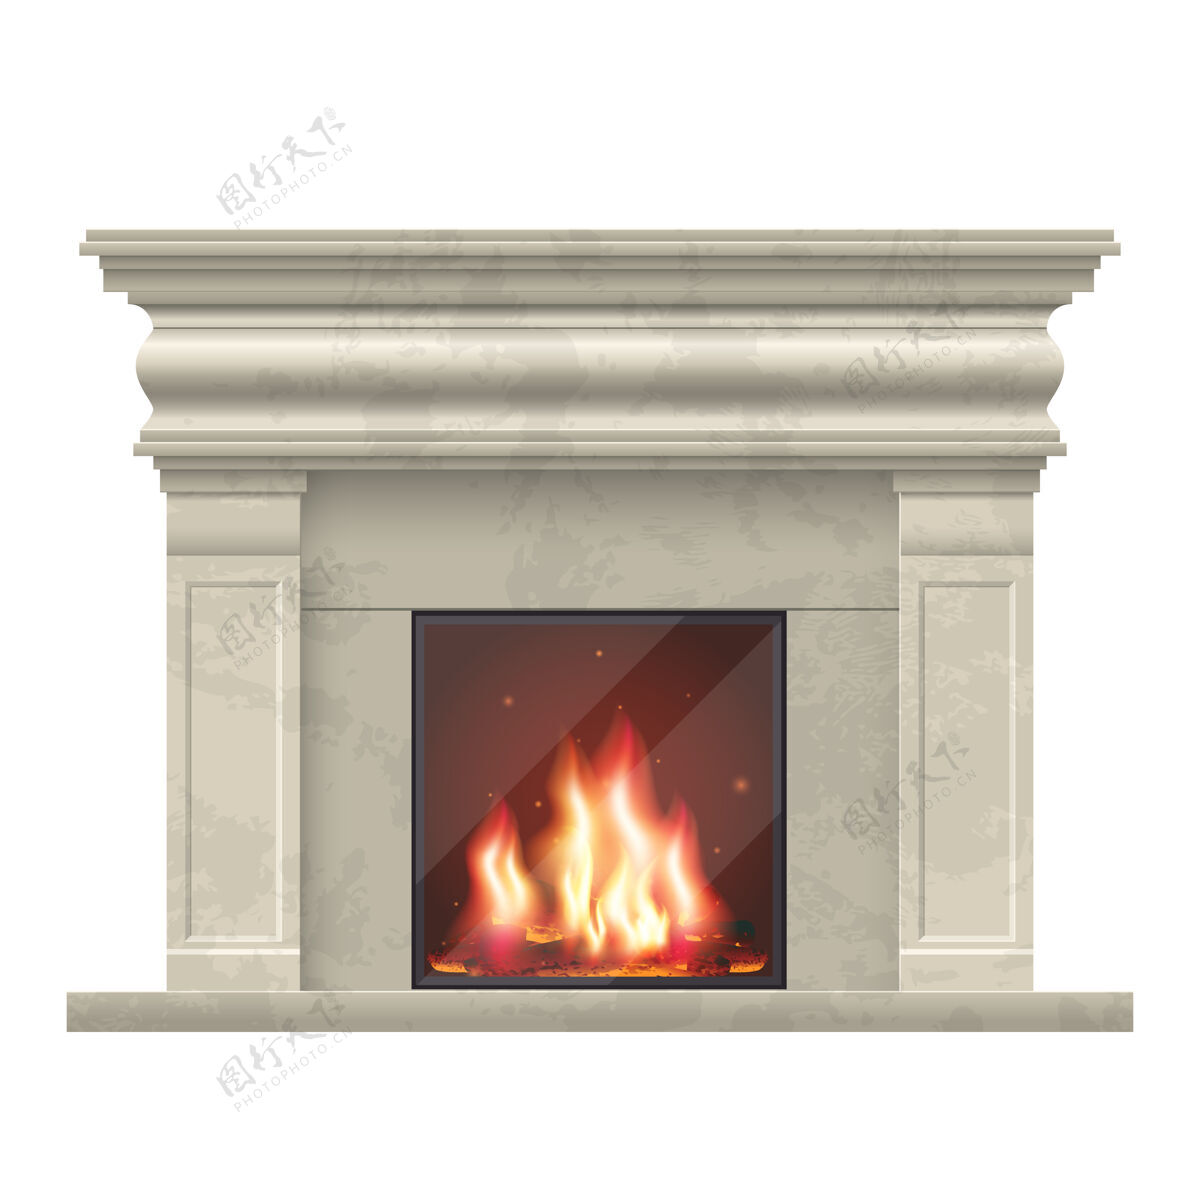 能源经典壁炉客厅内部壁炉家庭内部 插图舒适壁炉火经典热